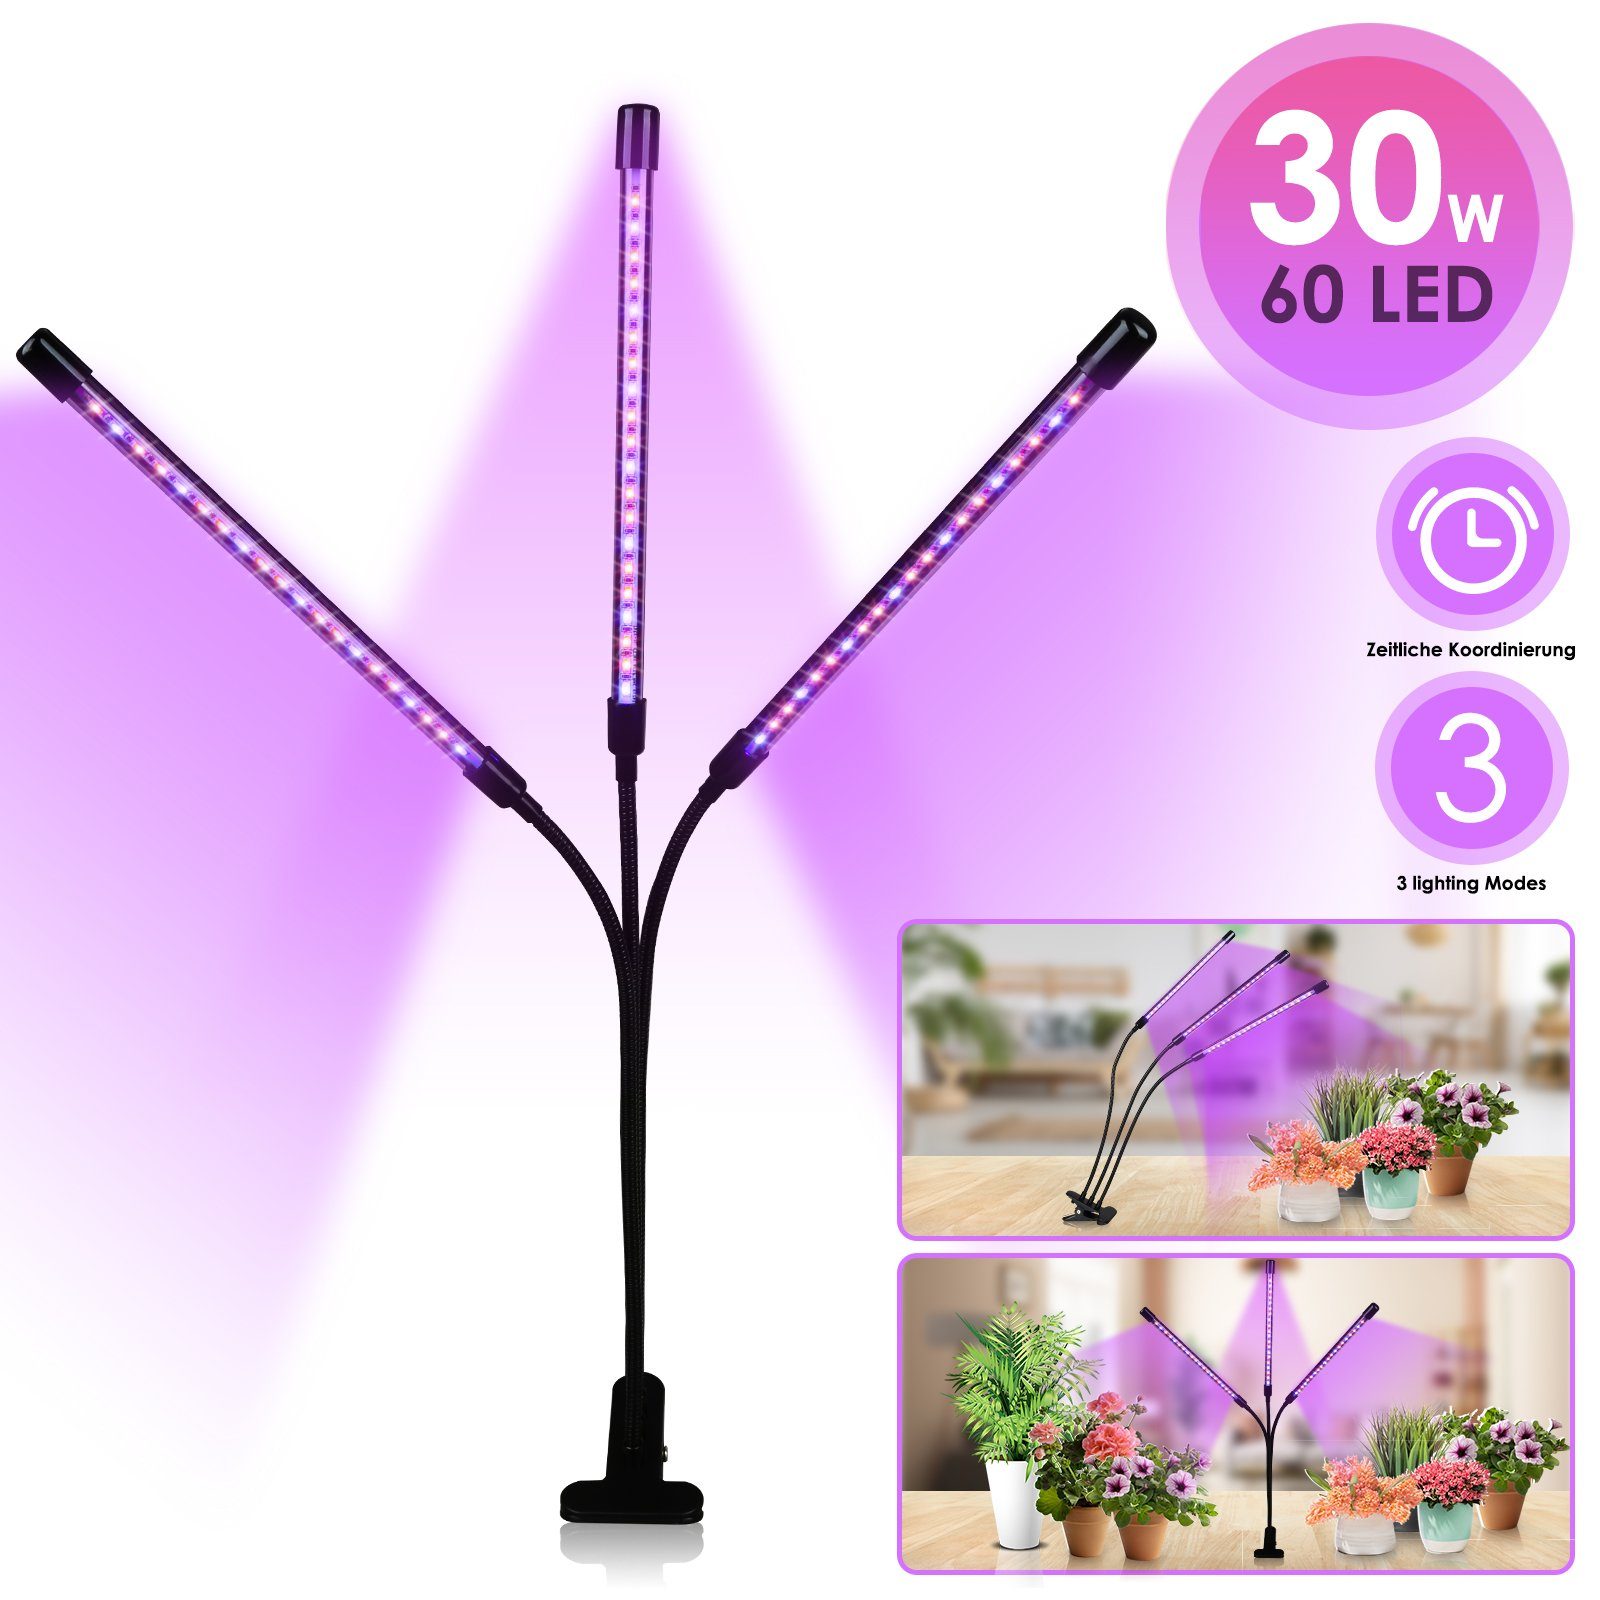 Lospitch Pflanzenlampe LED Pflanzenlicht 30W Dimmbar Vollspektrum 3 Kopf Wachstumslampe, Grow Light mit 3 Licht Modus, 10 Helligkeitsstufen